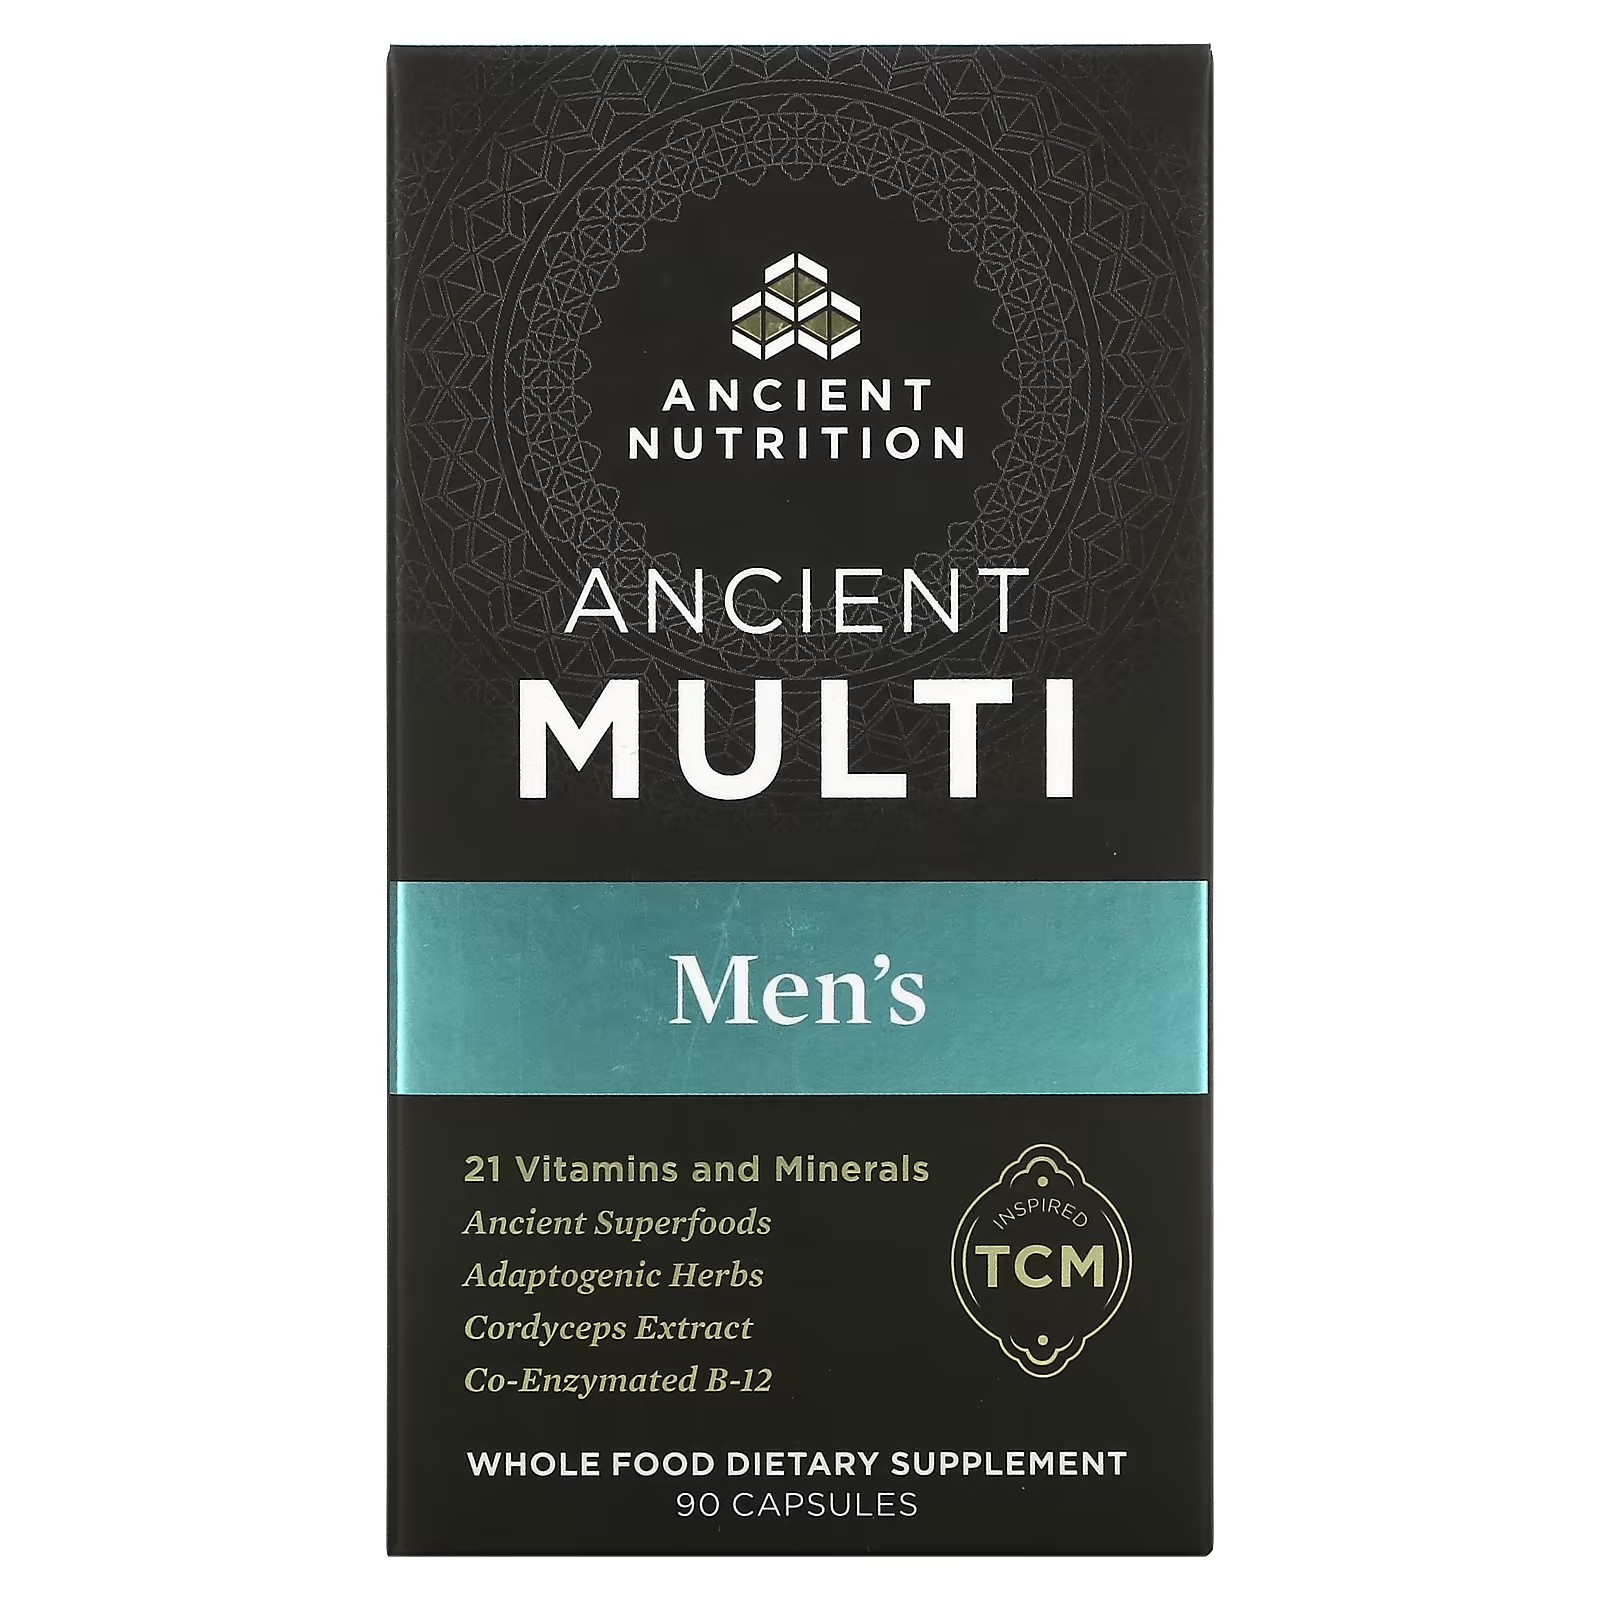 Мультивитамины для Мужчин Dr. Axe / Ancient Nutrition, 90 капсул vplab ultra men’s мультивитамины для мужчин для физической активности 90 капсул